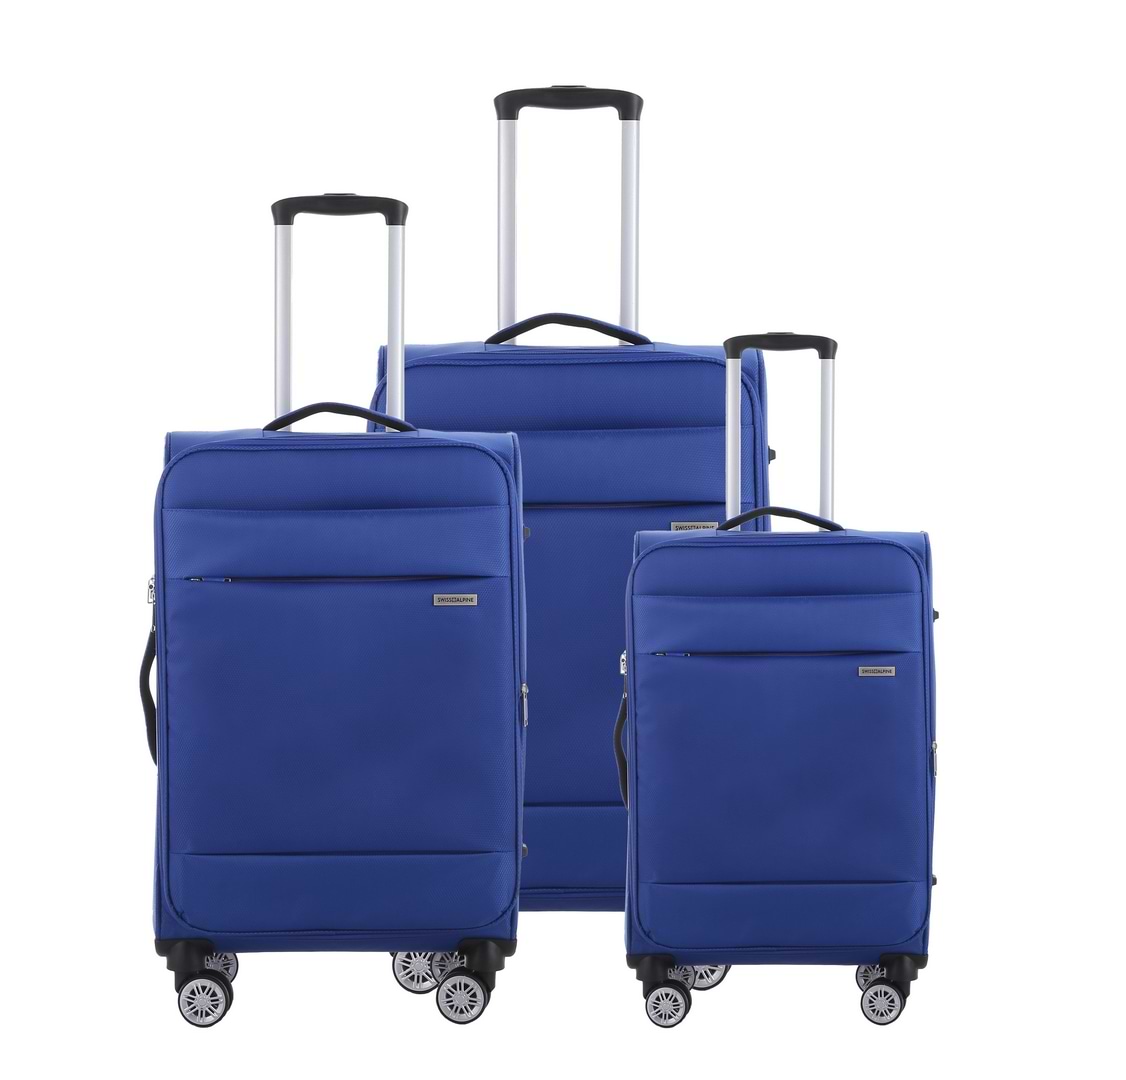 סט מזוודות בד 3 יחידות מידות 28|24|20 נפח מוגדל דגם Alpine צבע כחול רויאל Swiss Voyager